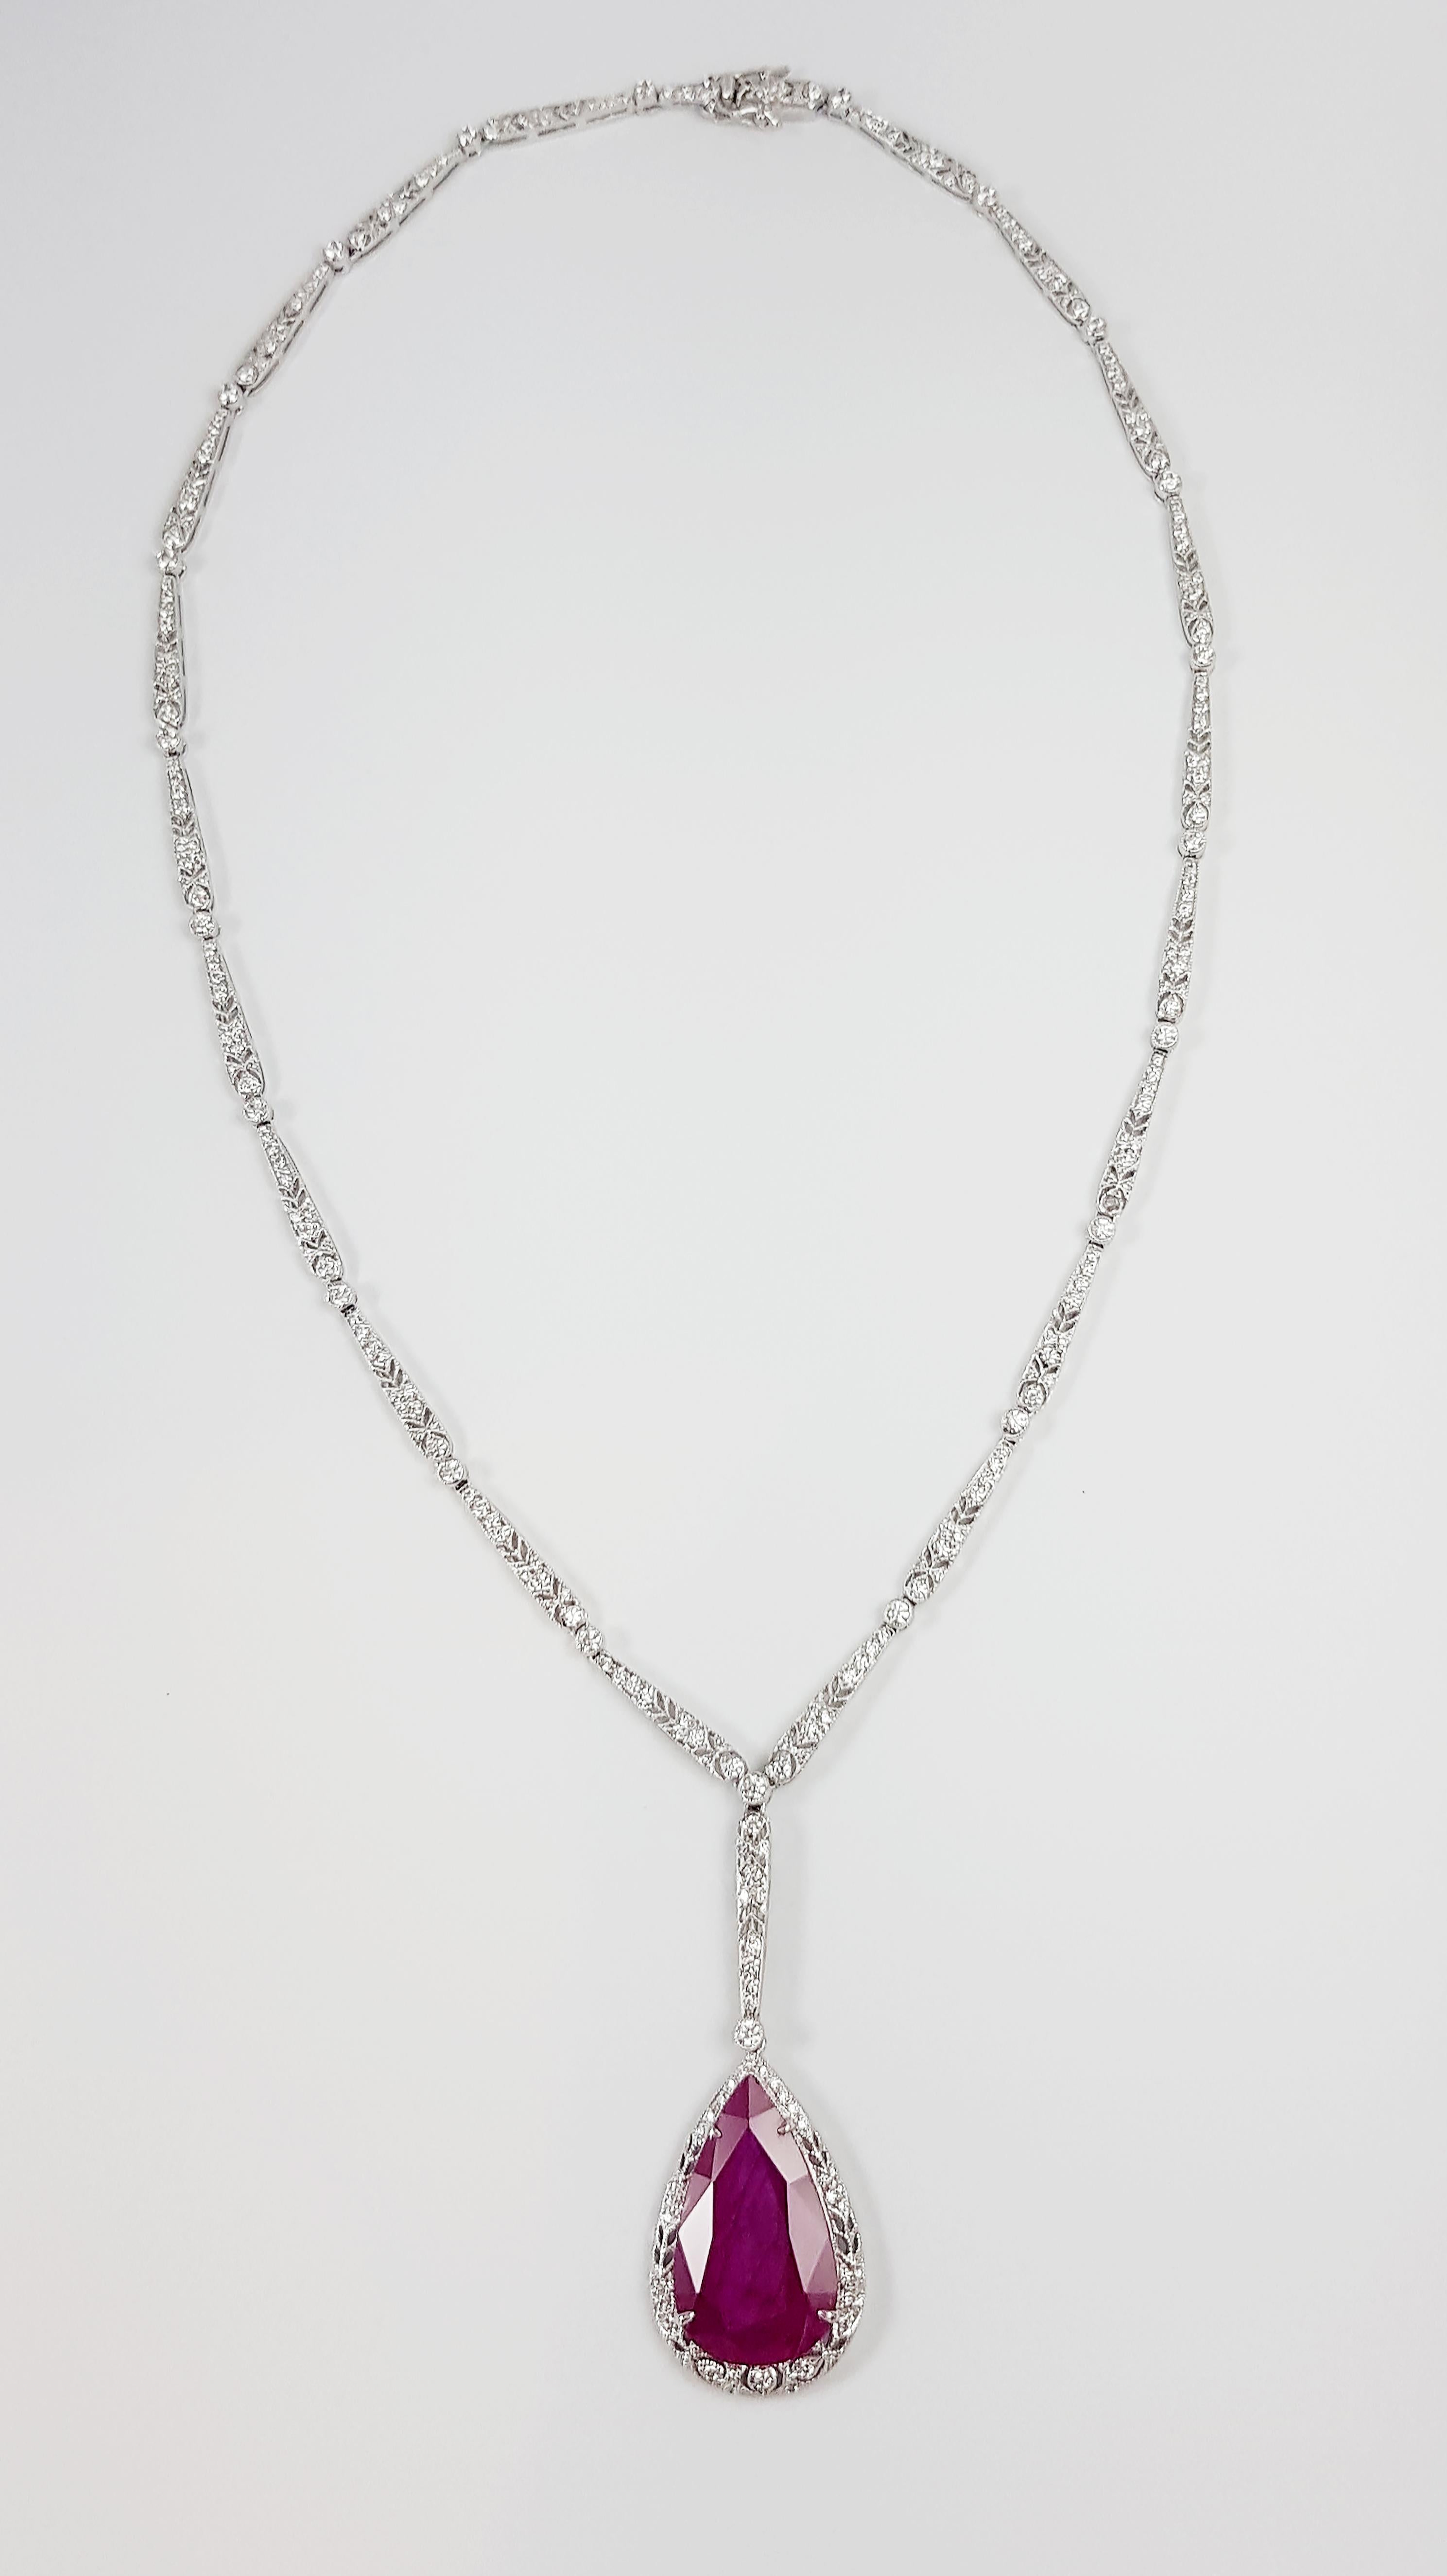 Rubin 9,23 Karat mit Diamant 2,77 Karat Halskette in 18 Karat Weißgold gefasst

Breite:  1.8 cm 
Länge: 49.0cm
Gesamtgewicht: 19,96 Gramm

